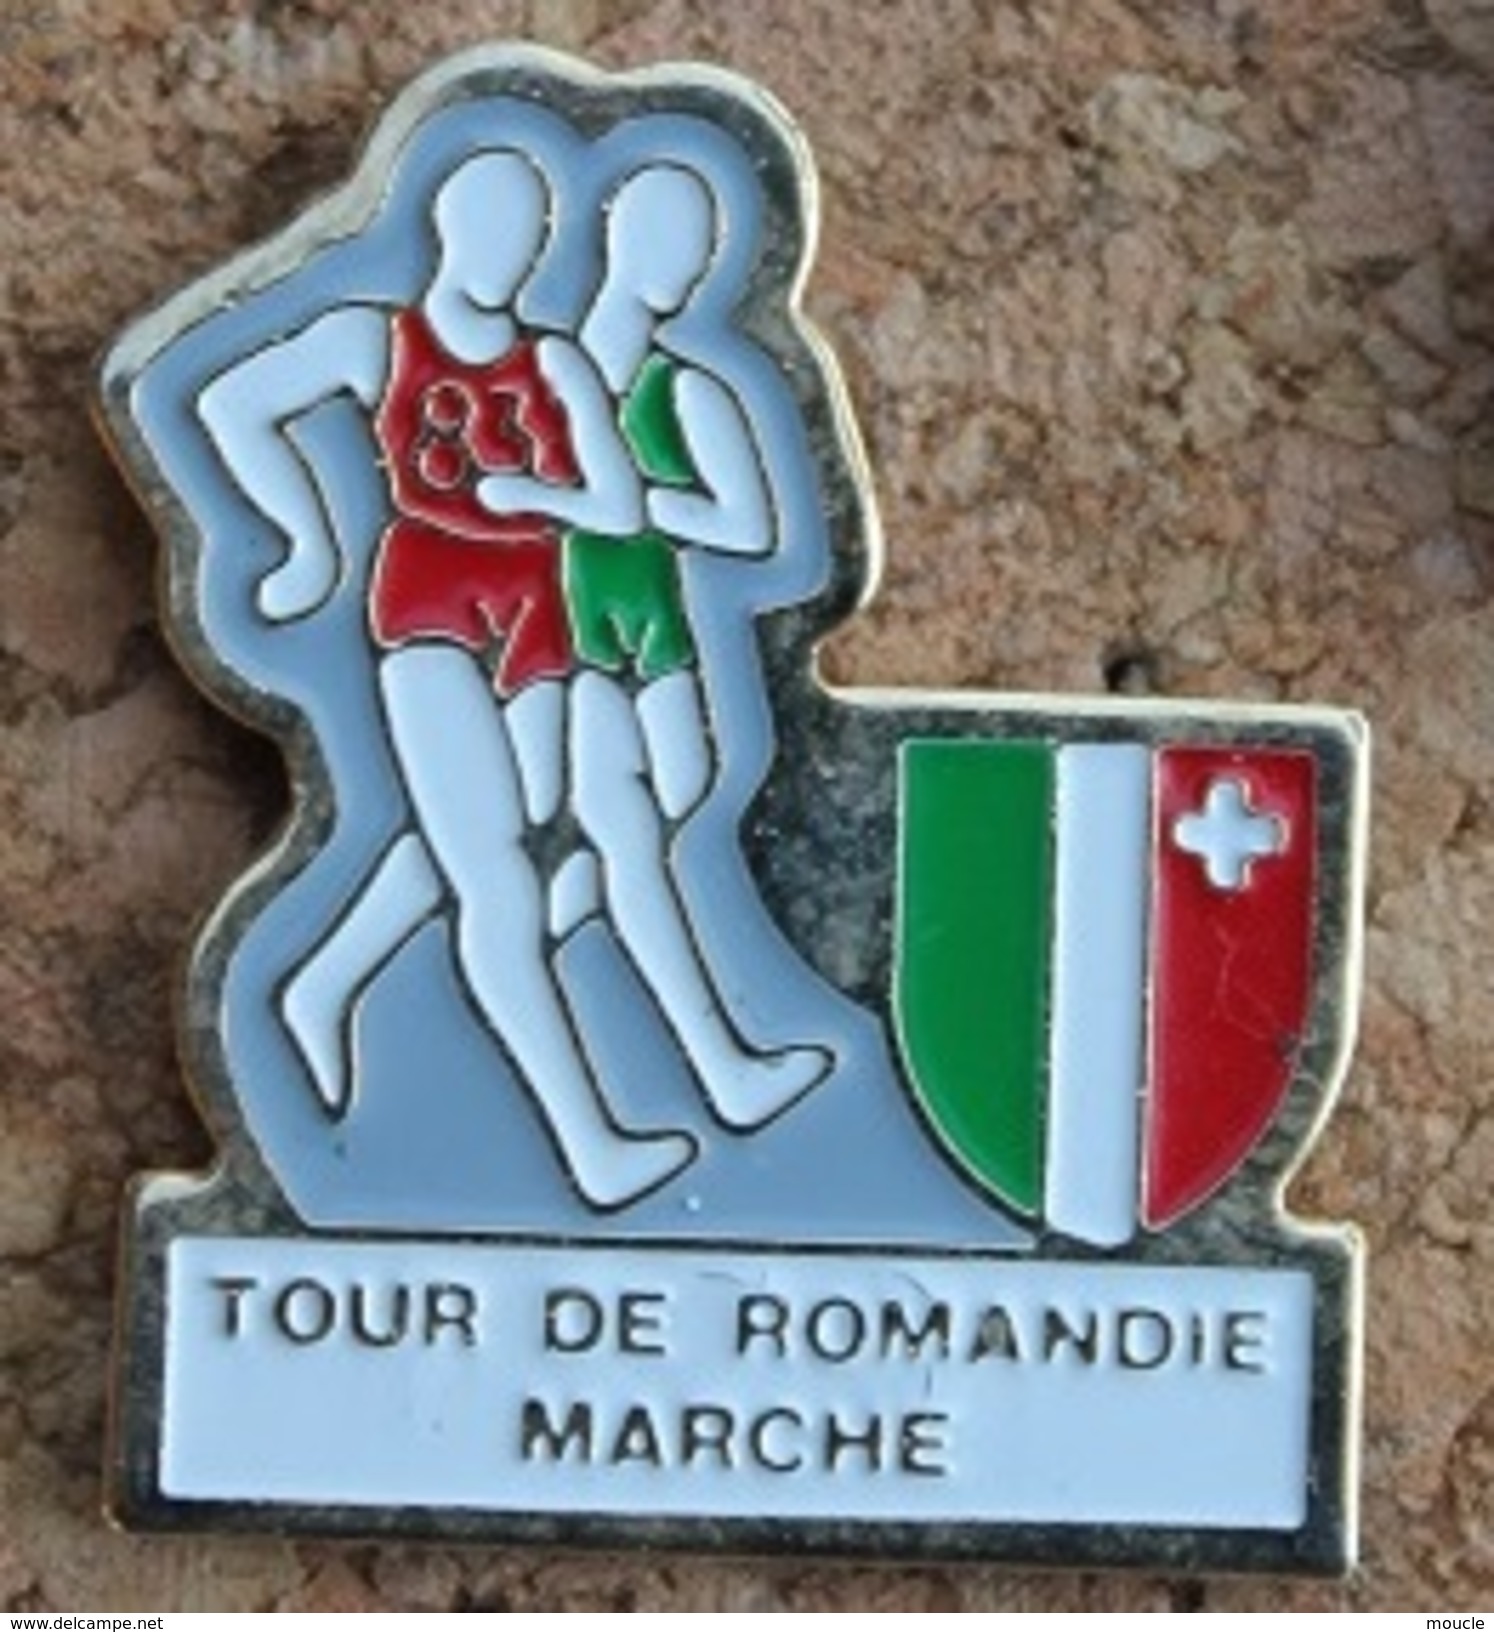 TOUR DE ROMANDIE A LA MARCHE - SUISSE - ETAPE DU CANTON DE NEUCHÂTEL - MARCHEURS - SCHWEIZ - SVIZZERA - SUIZA  -  (13) - Athletics